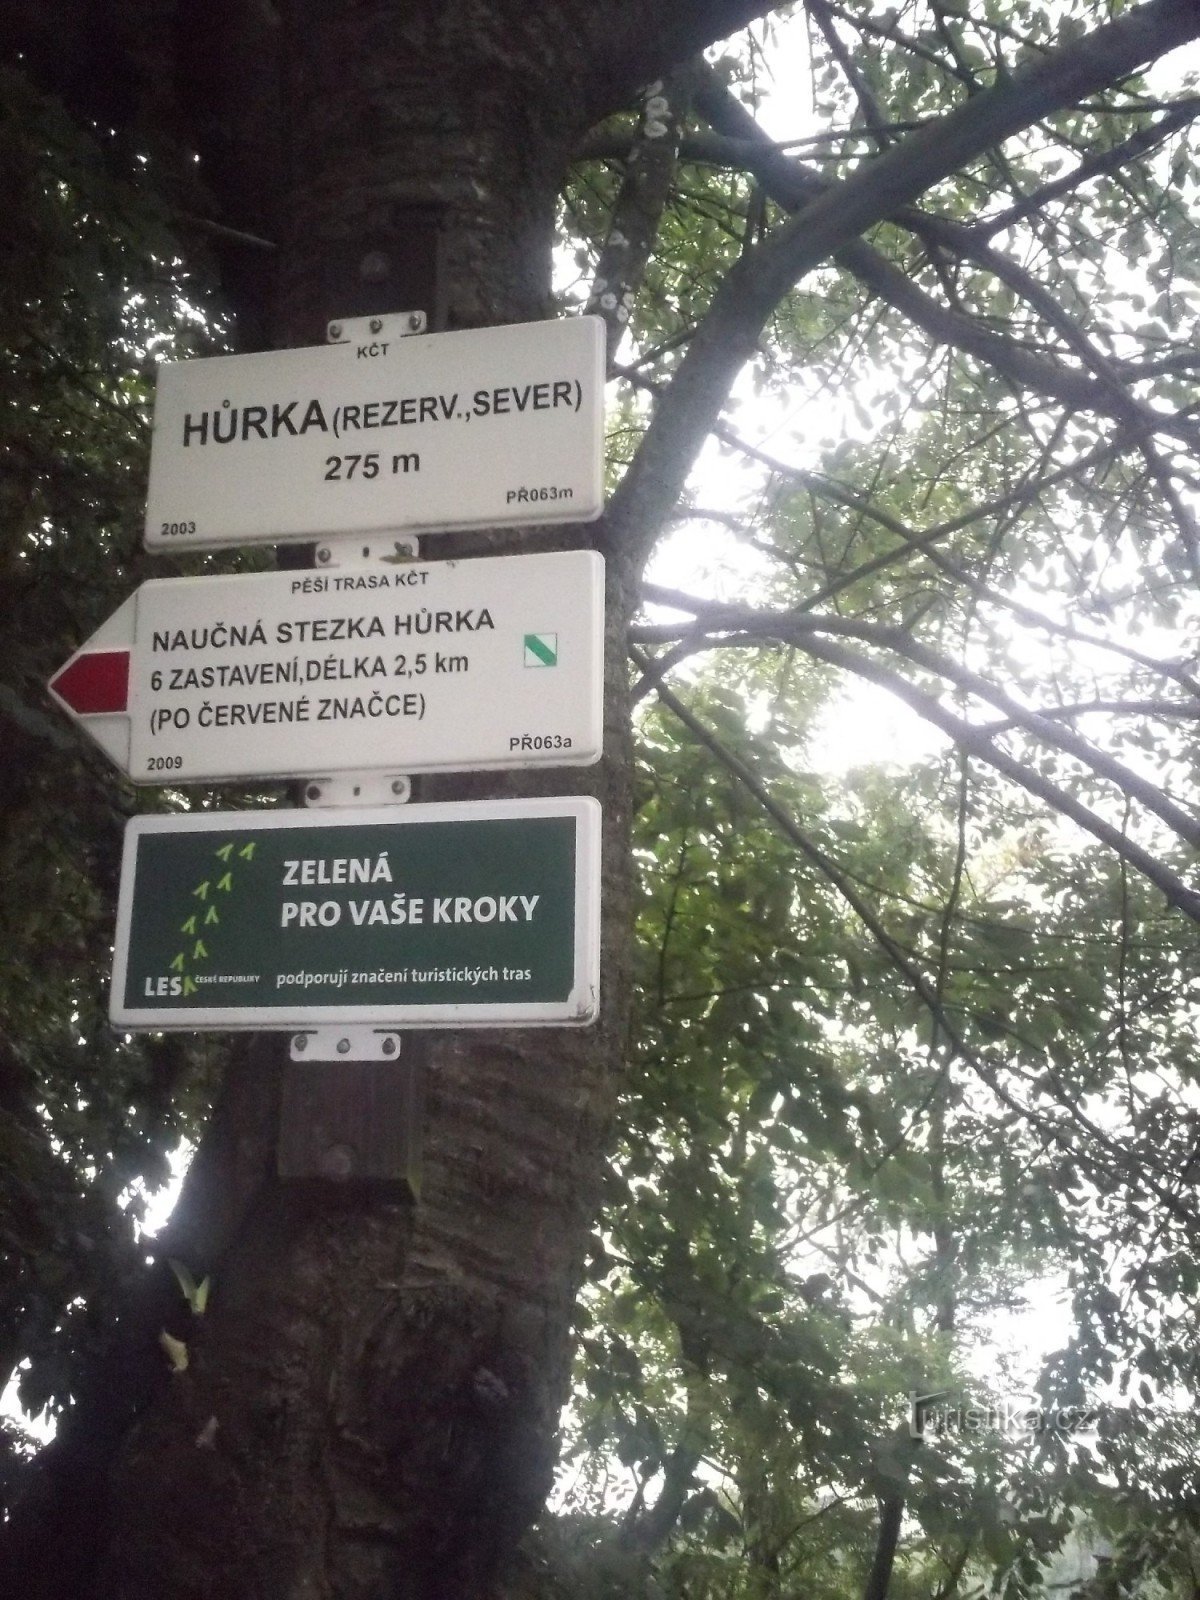 Propas Hranická, ścieżka dydaktyczna Hůrka